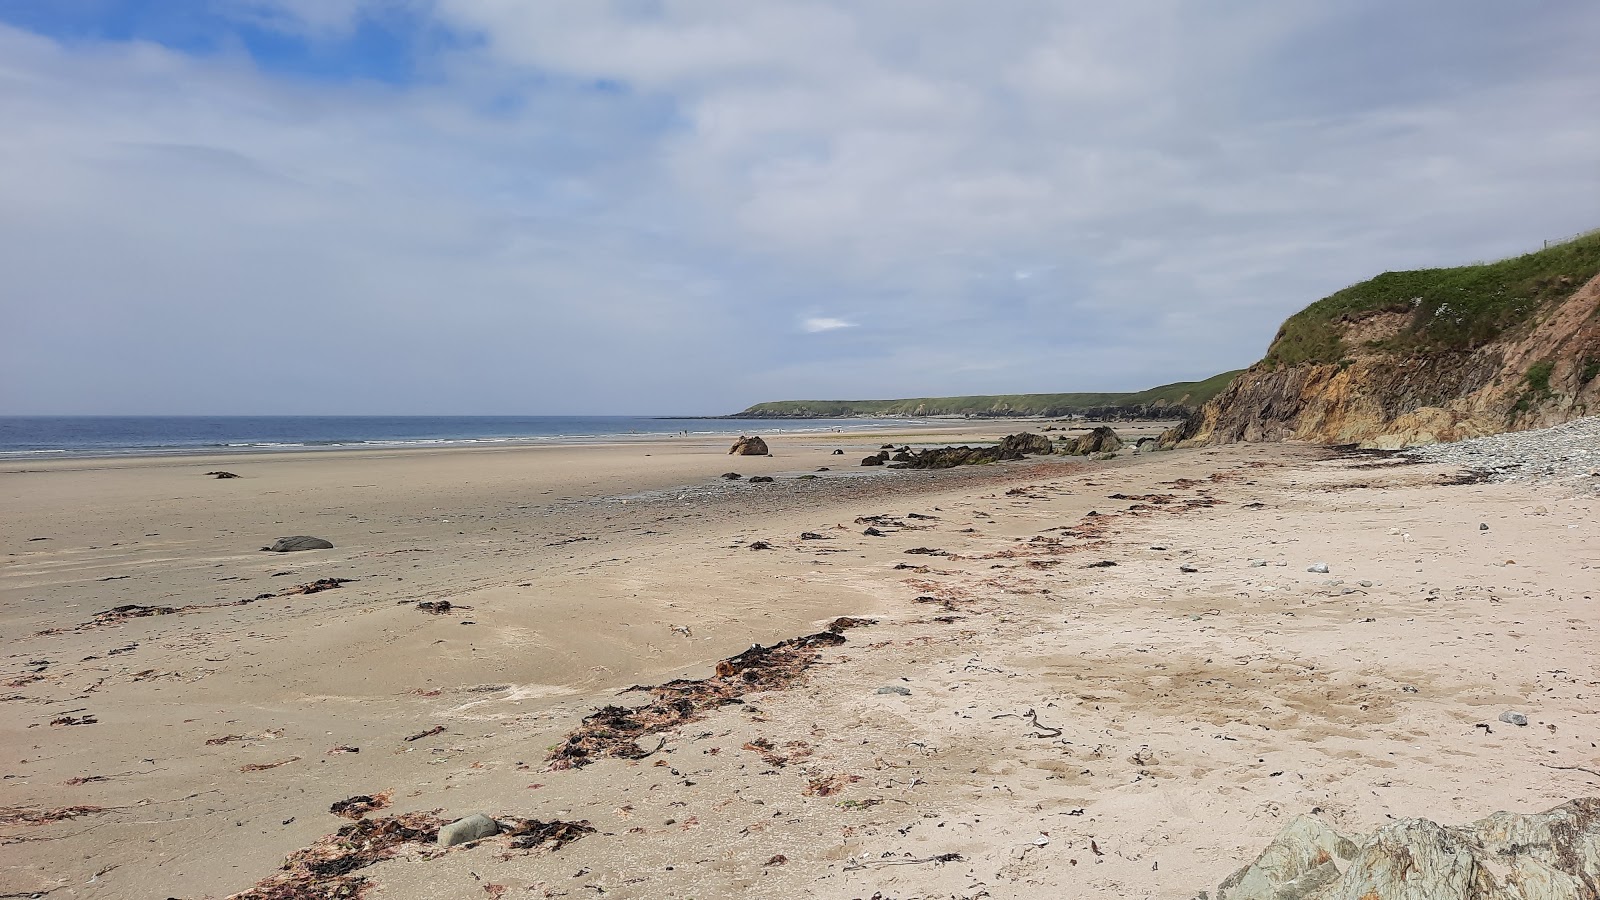 Traeth Penllech'in fotoğrafı geniş plaj ile birlikte